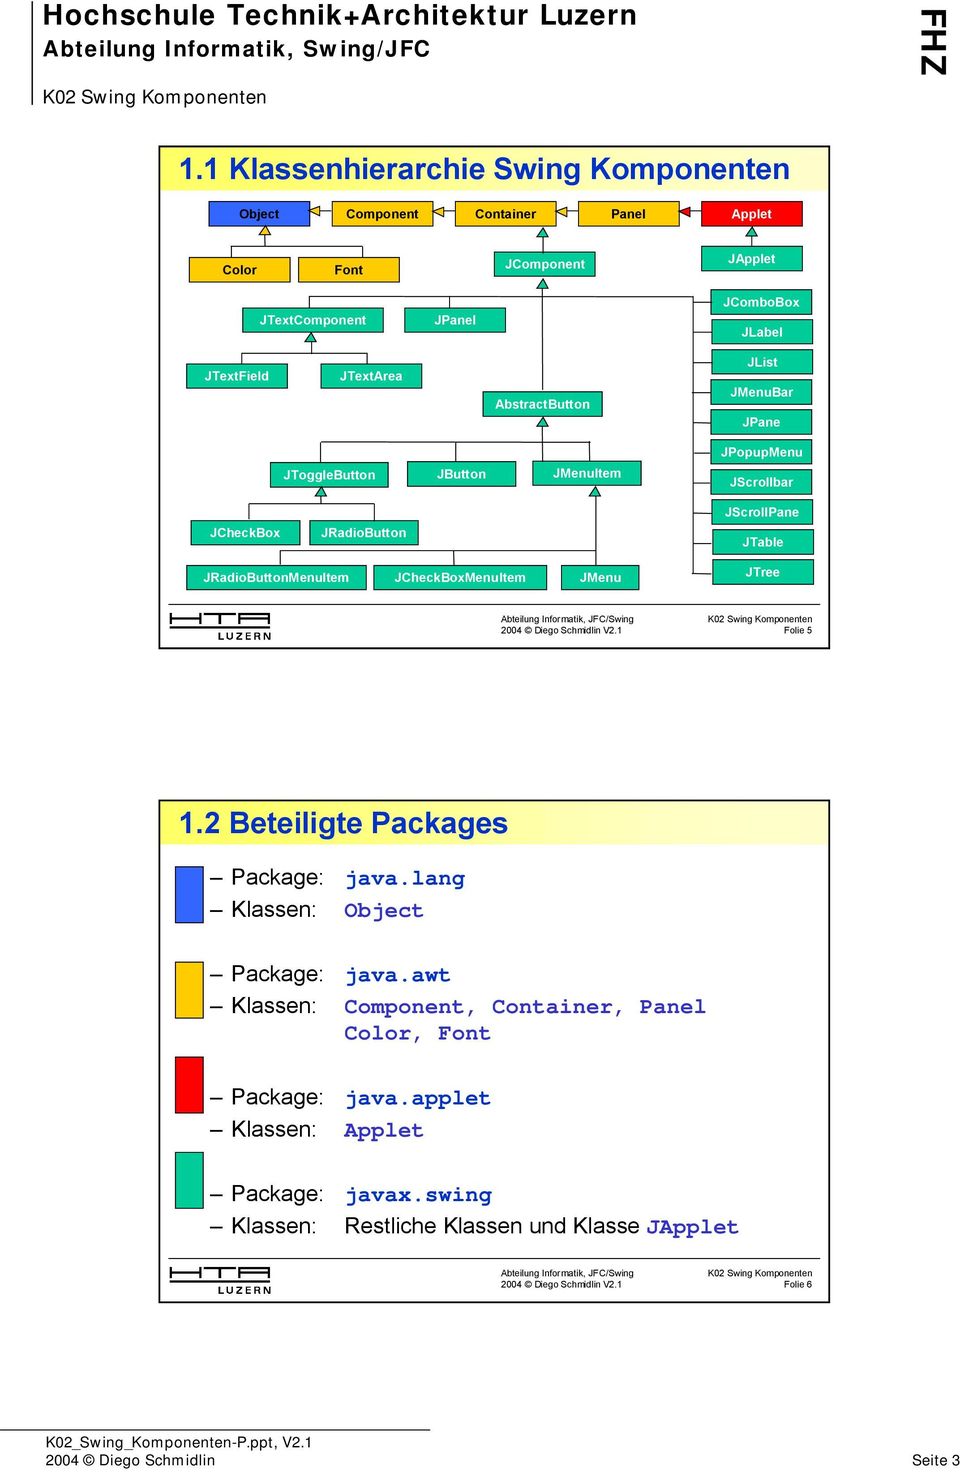 JRadioButtonMenuItem JCheckBoxMenuItem JMenu JTree Folie 5 1.2 Beteiligte Packages Package: java.lang Klassen: Object Package: java.